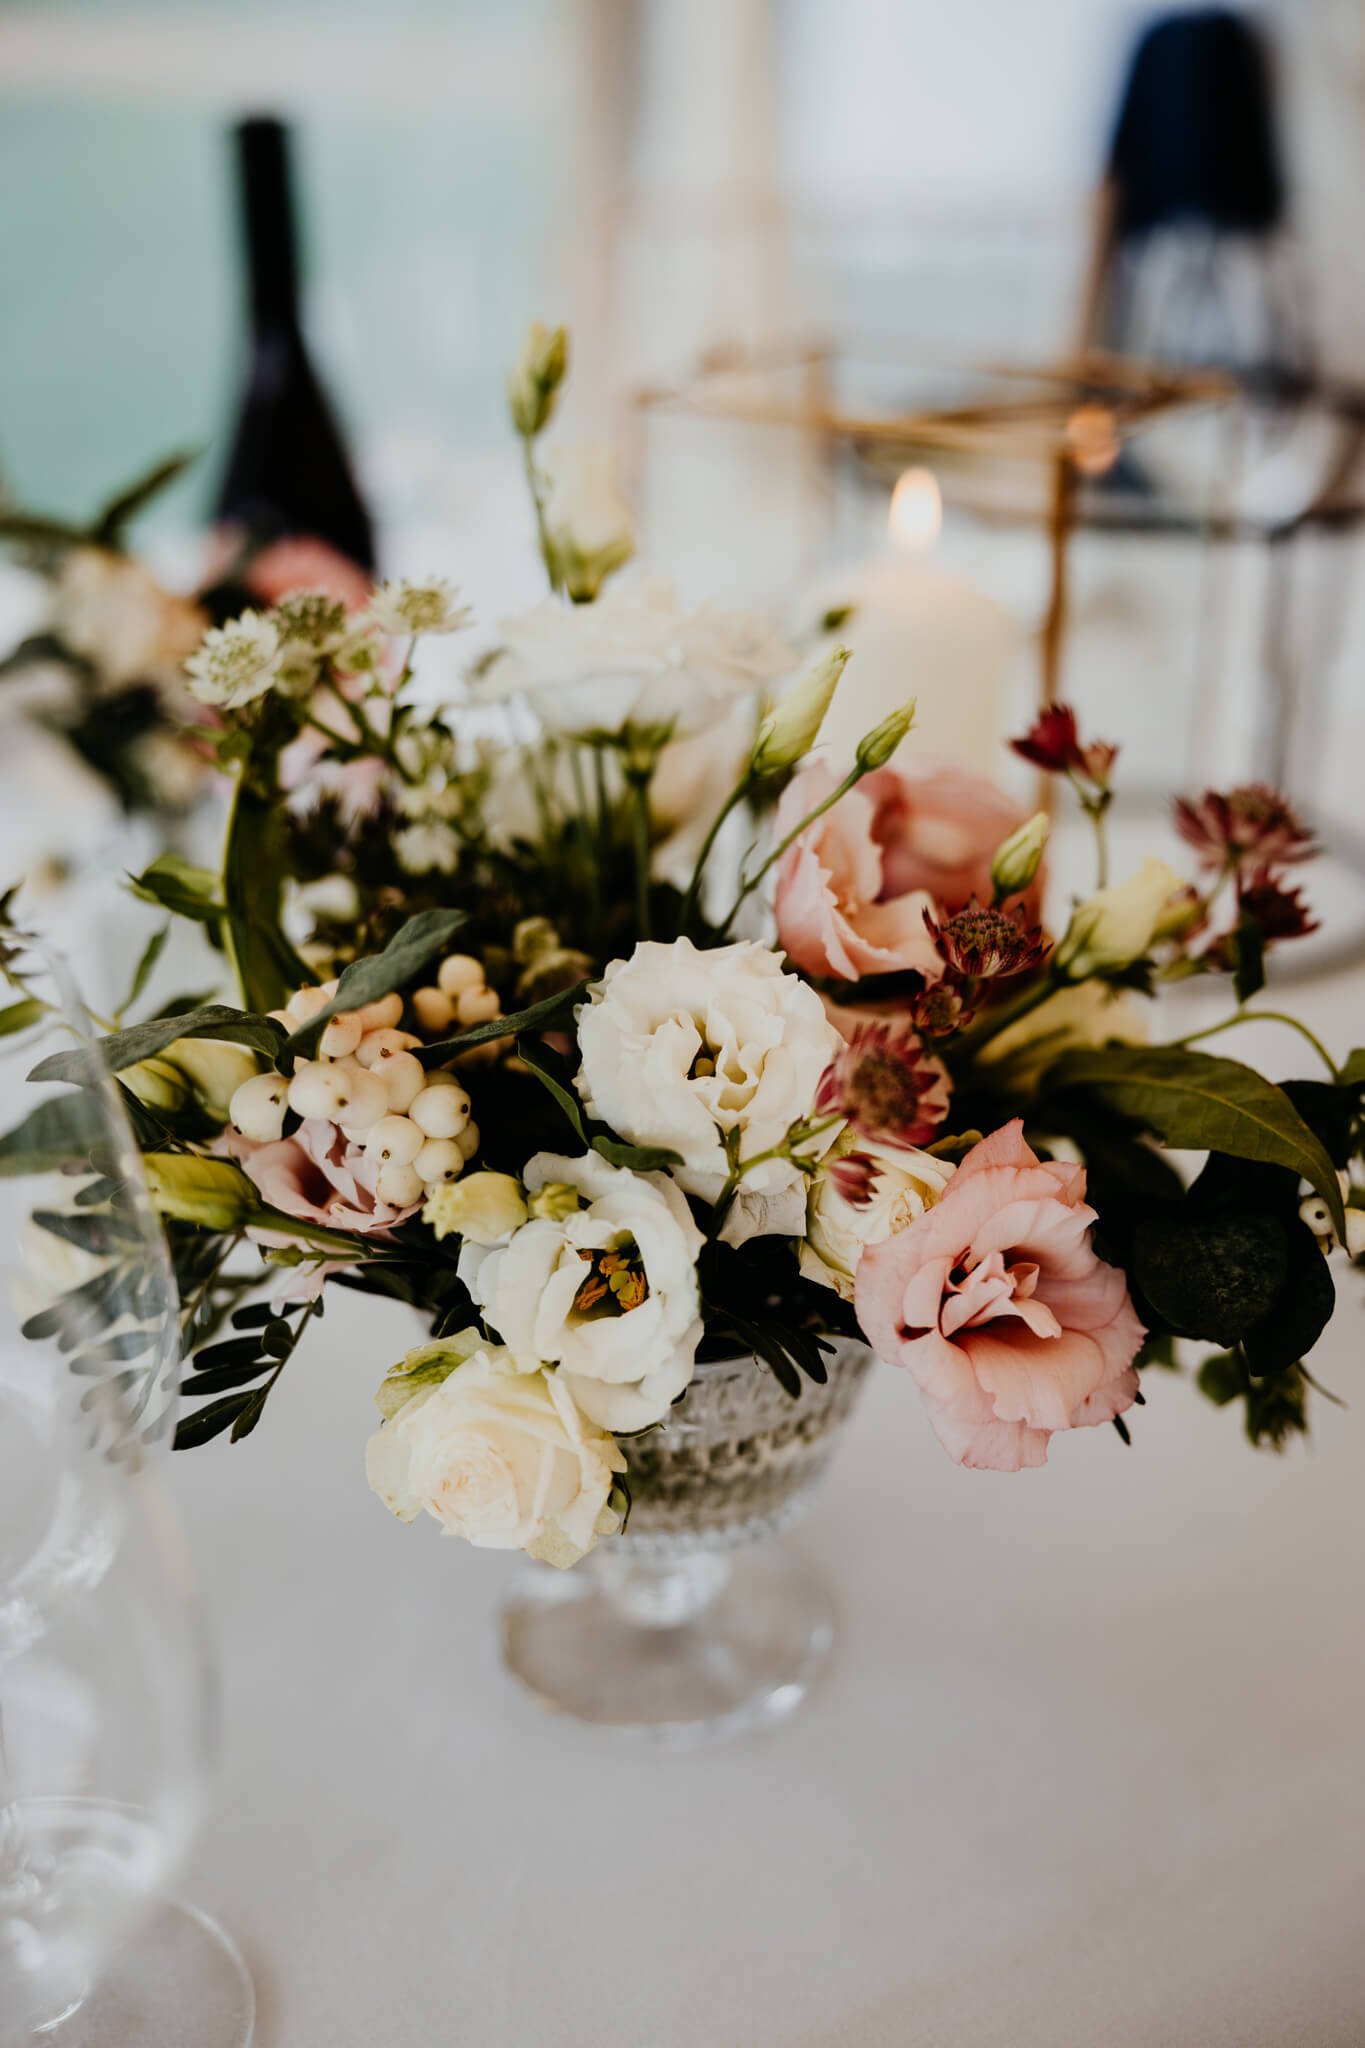 Beth-Shean-Wedding-table-4.jpg